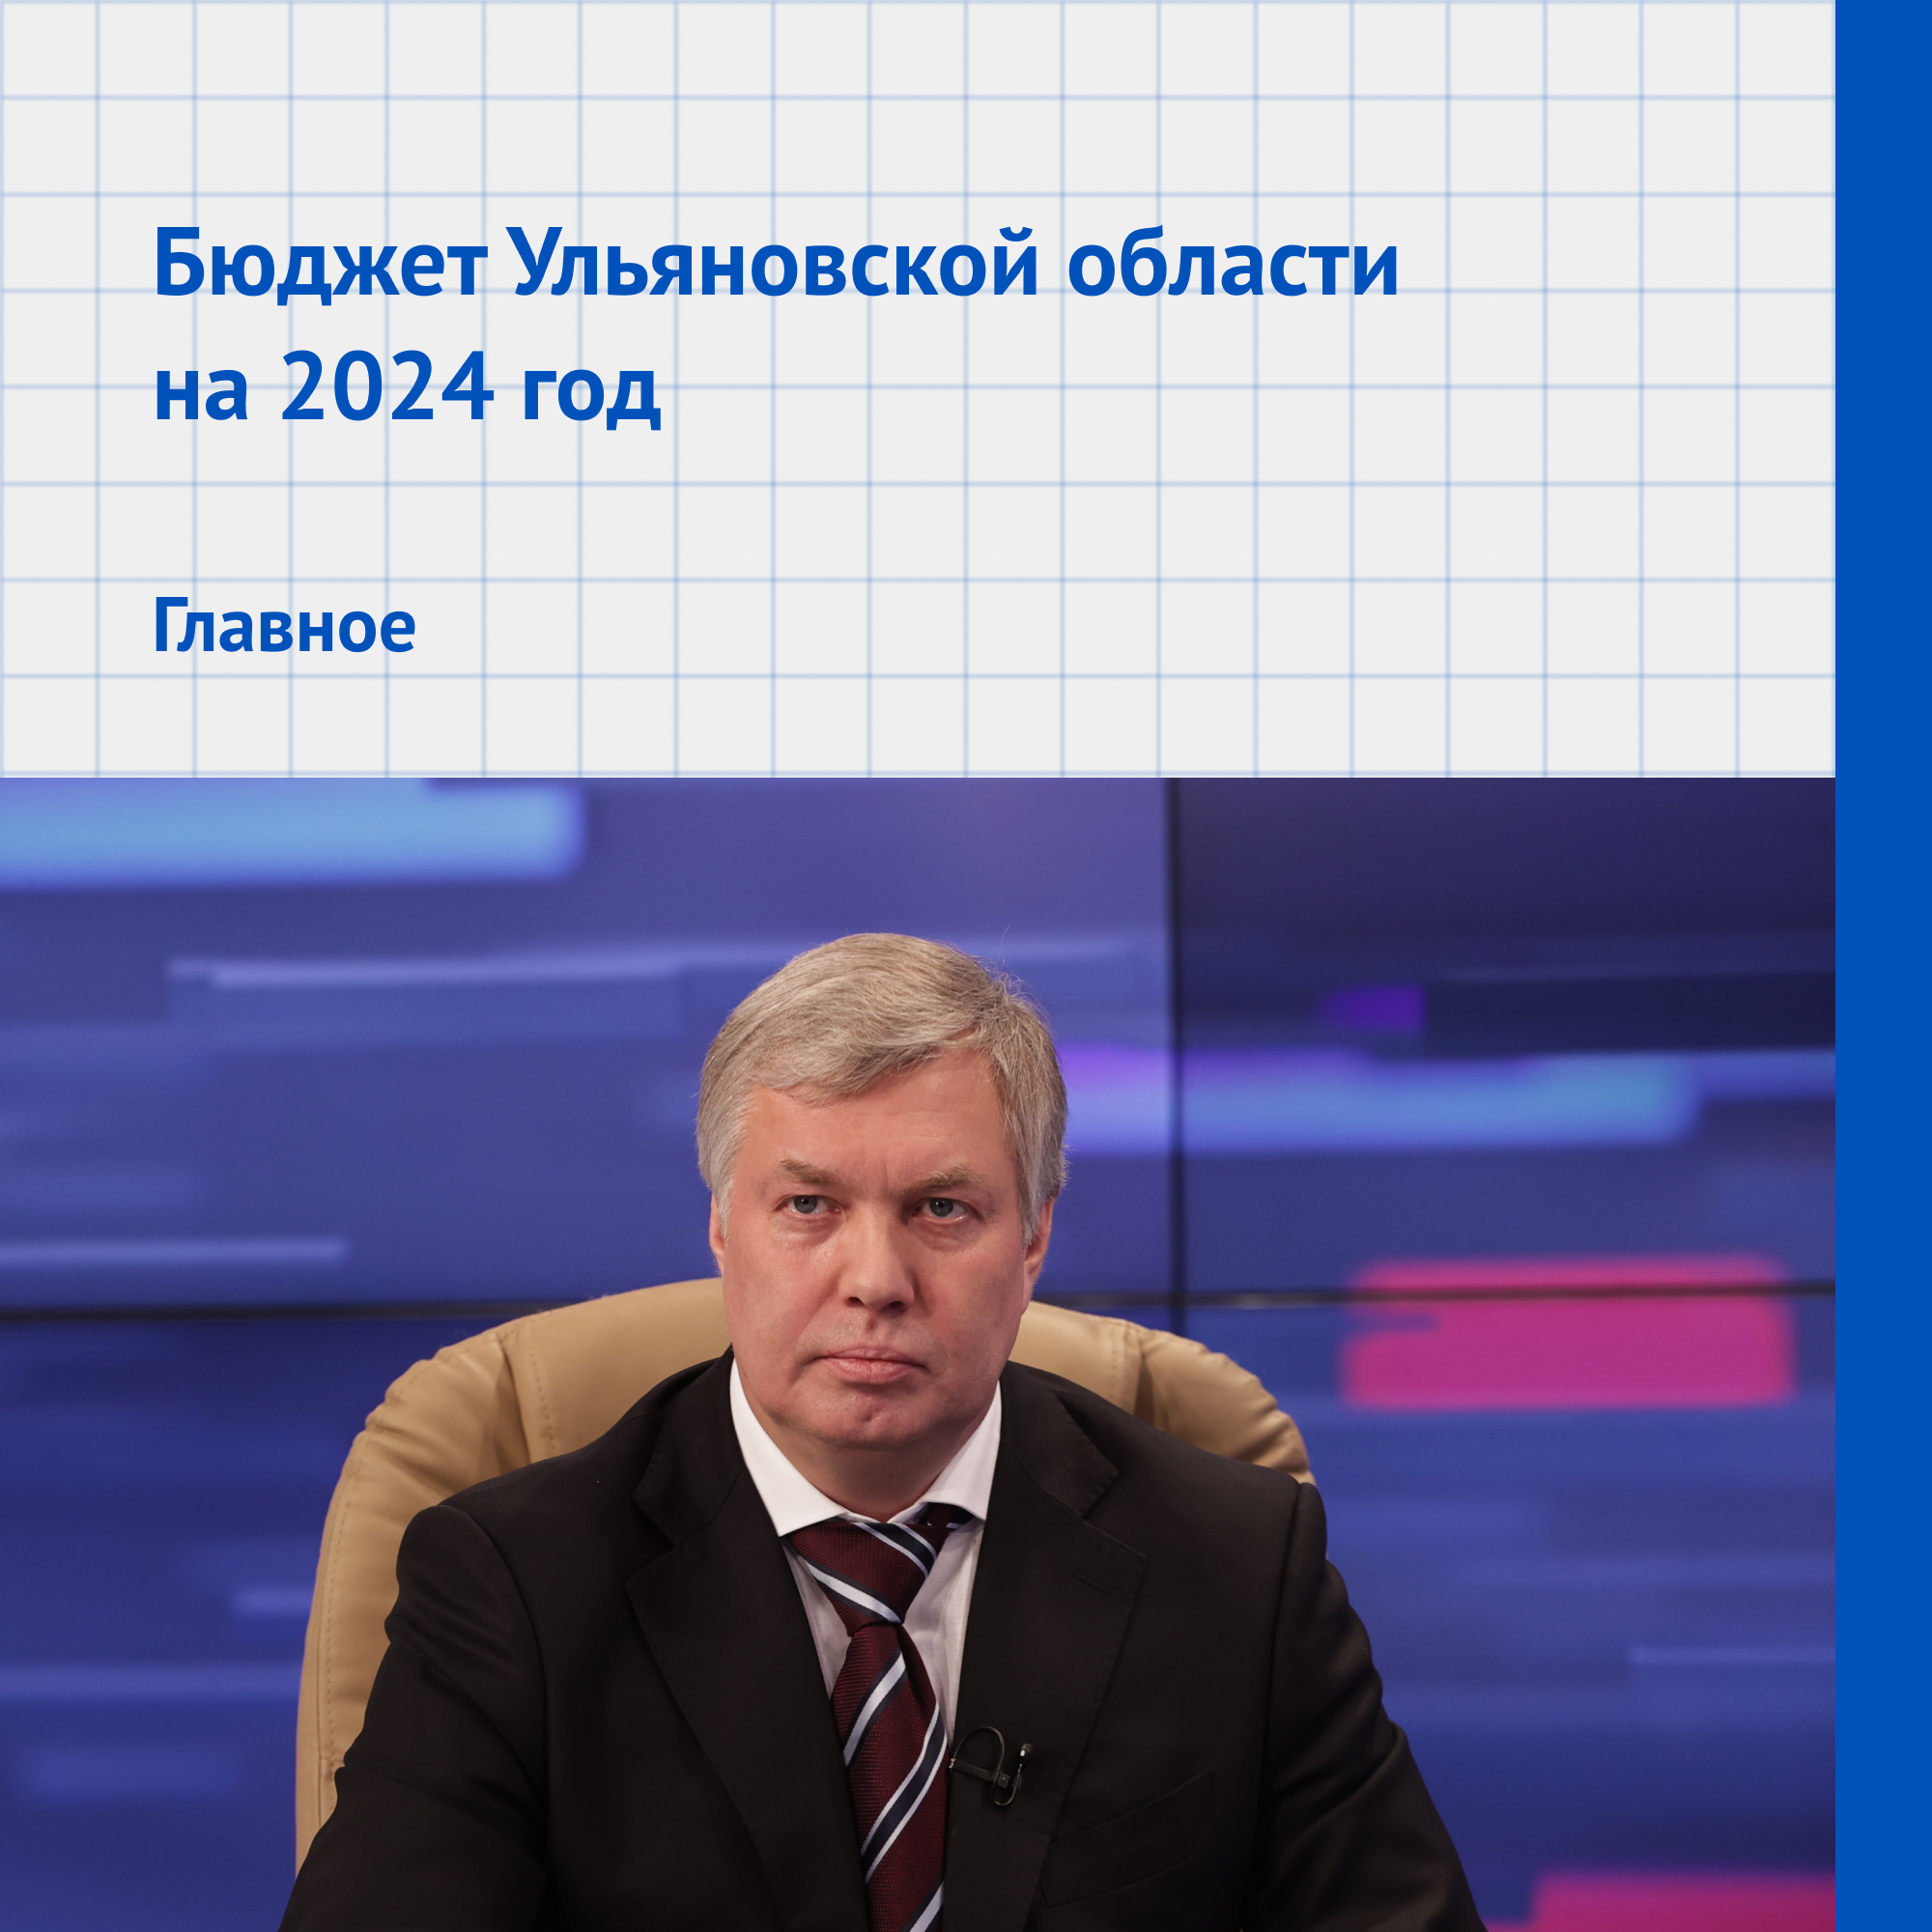 Глава Ульяновской области представил проект бюджета на 2024 год.